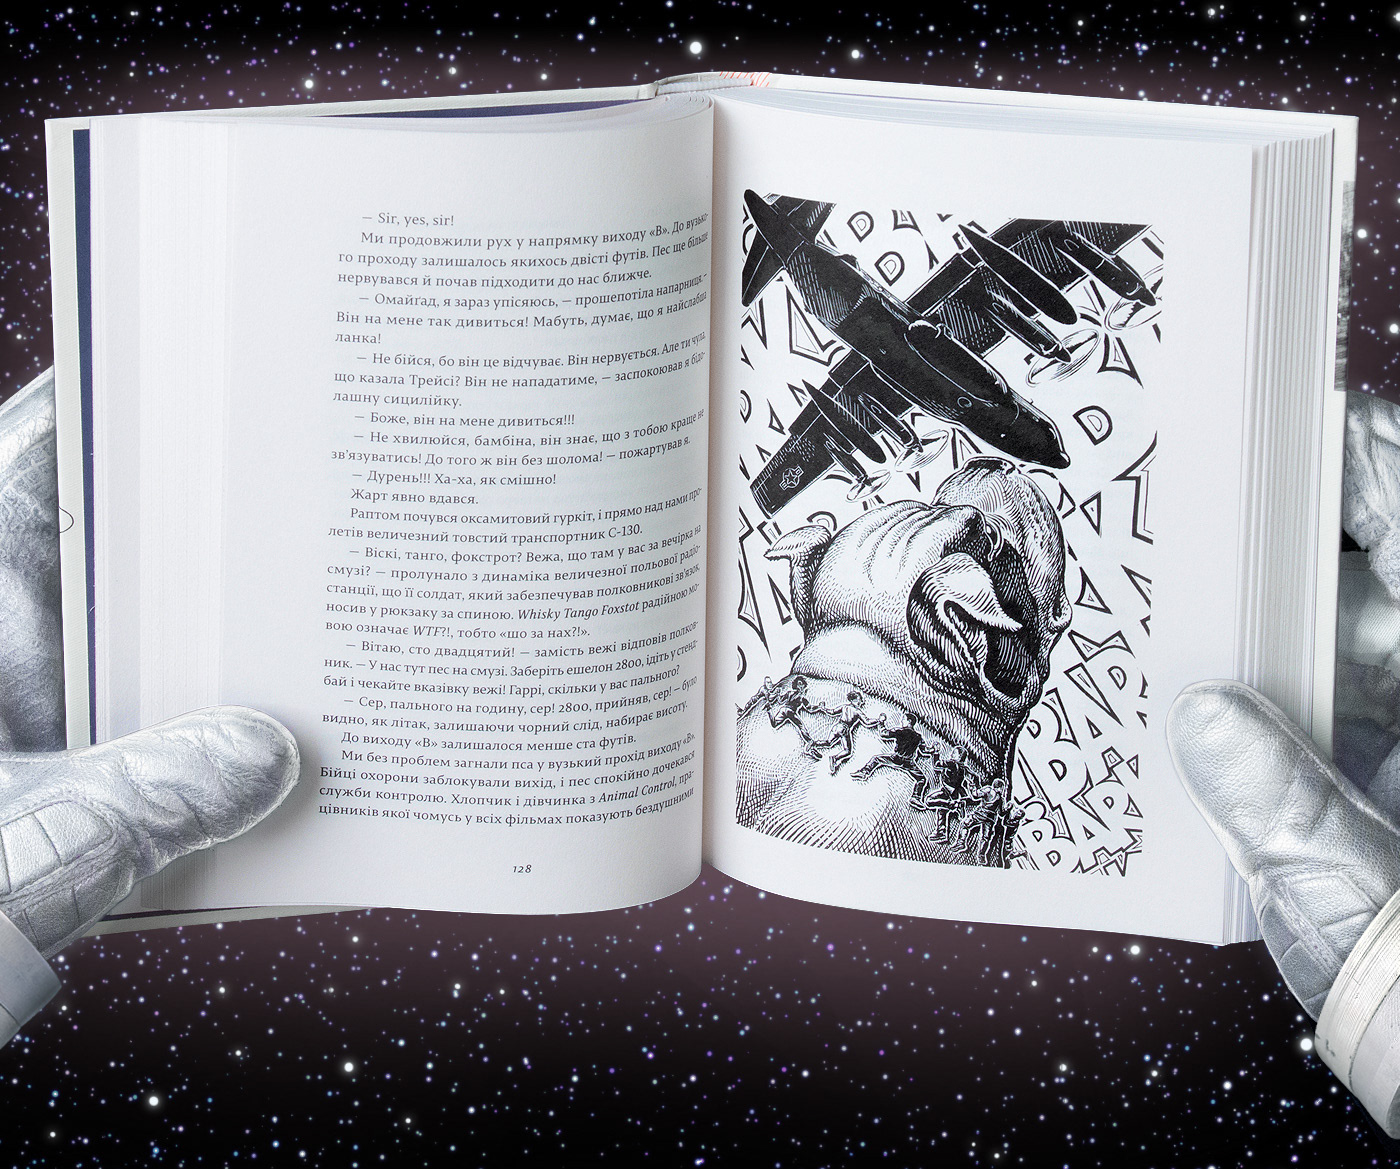 KomSa Space  nasa Dorje Batuu francesca book illustrations book books comics ink